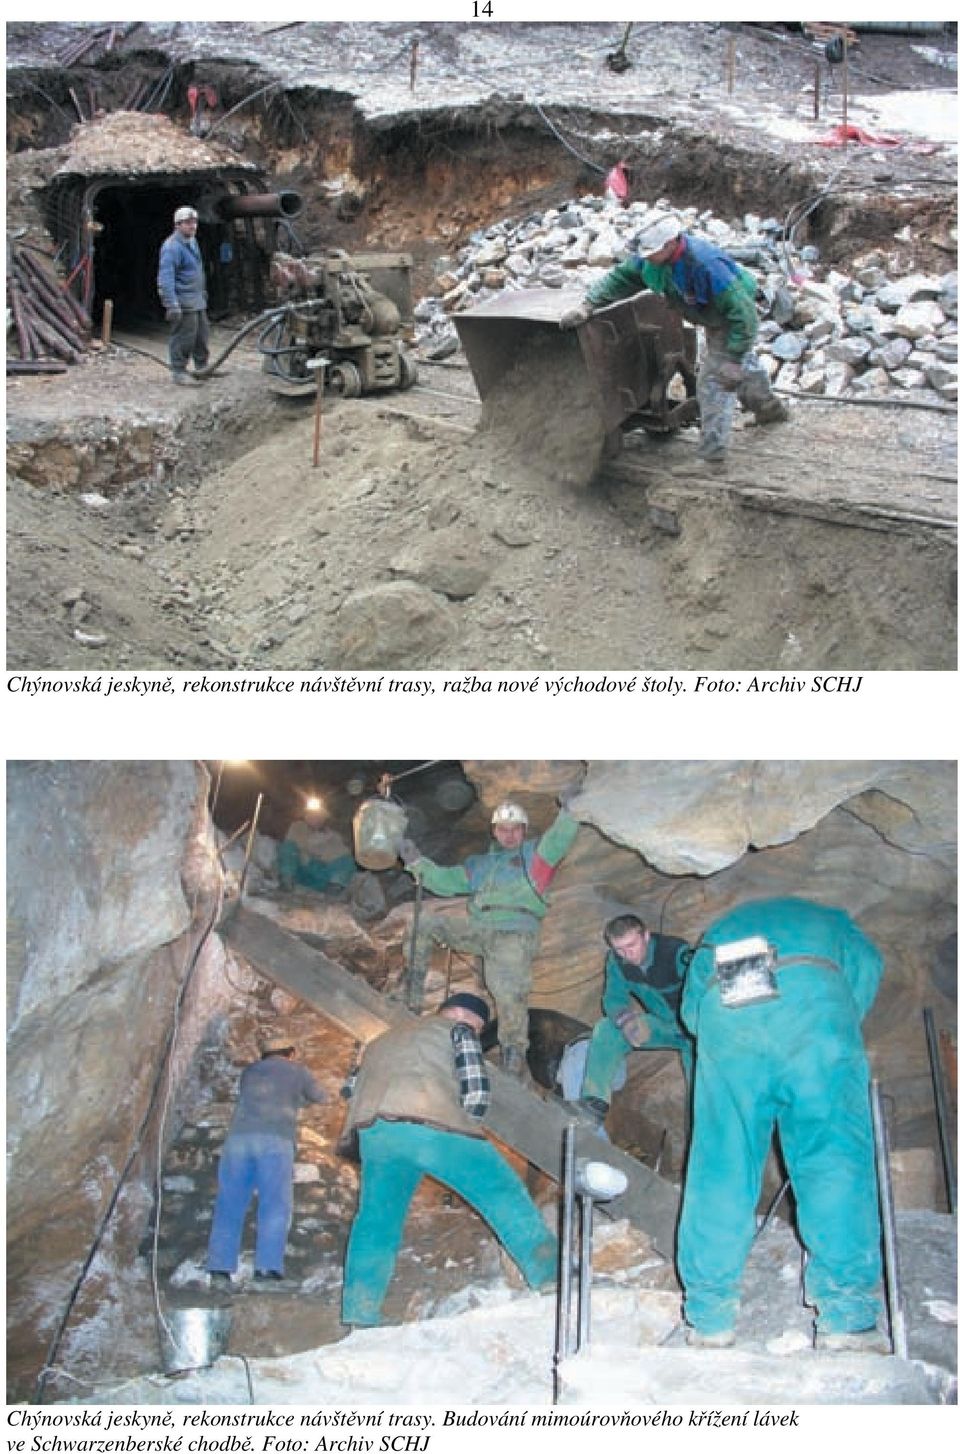 Foto: Archiv SCHJ Chýnovská jeskyně, rekonstrukce